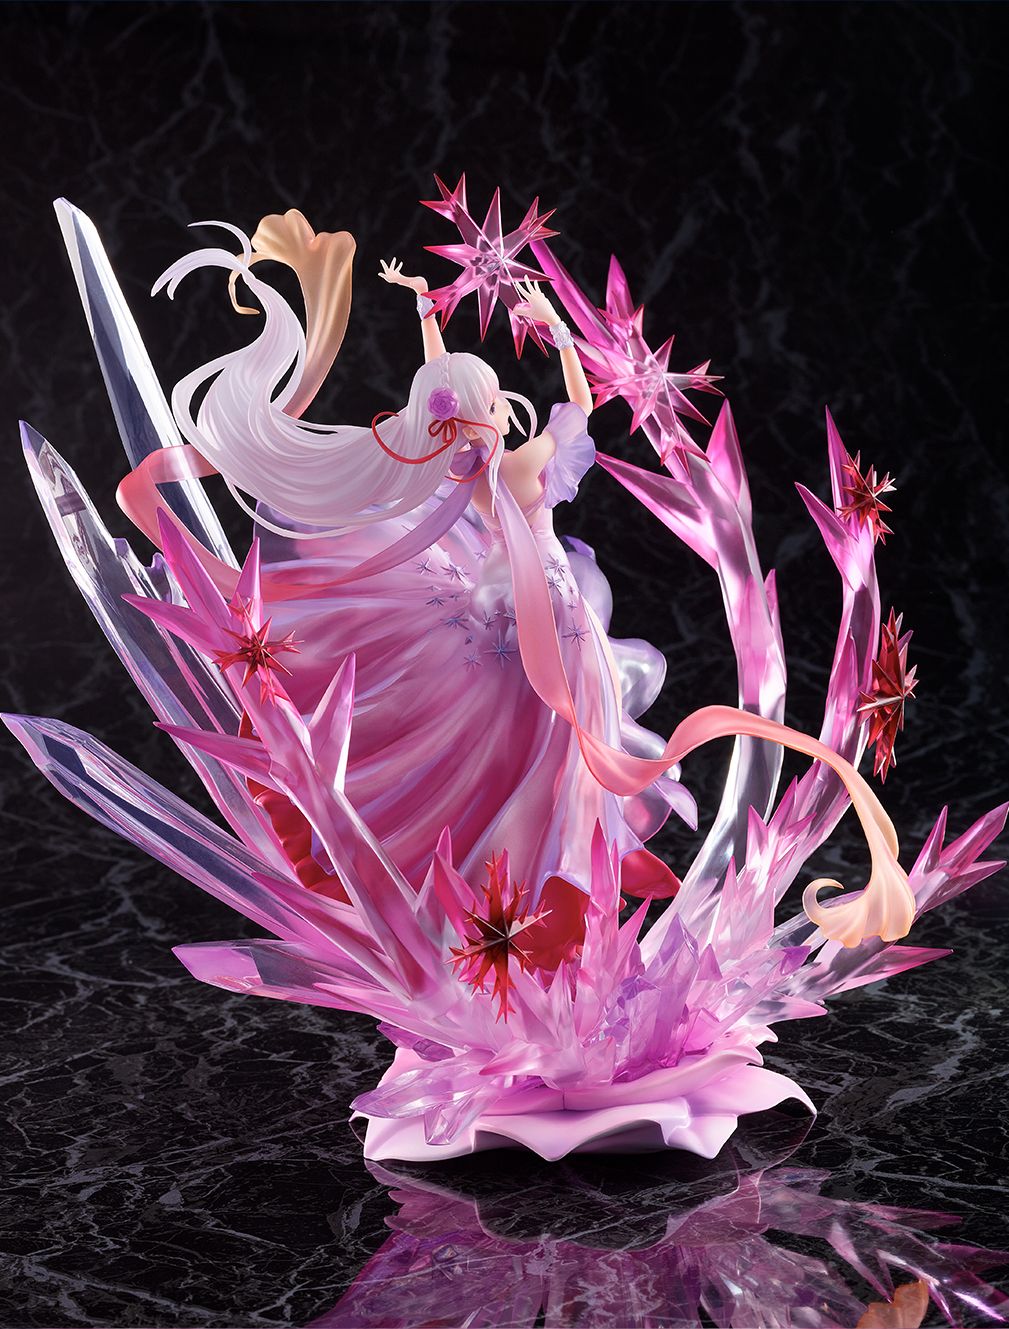 【限定販売】Re:ゼロから始める異世界生活『氷結のエミリア -Crystal Dress Ver-』 1/7 完成品フィギュア-010